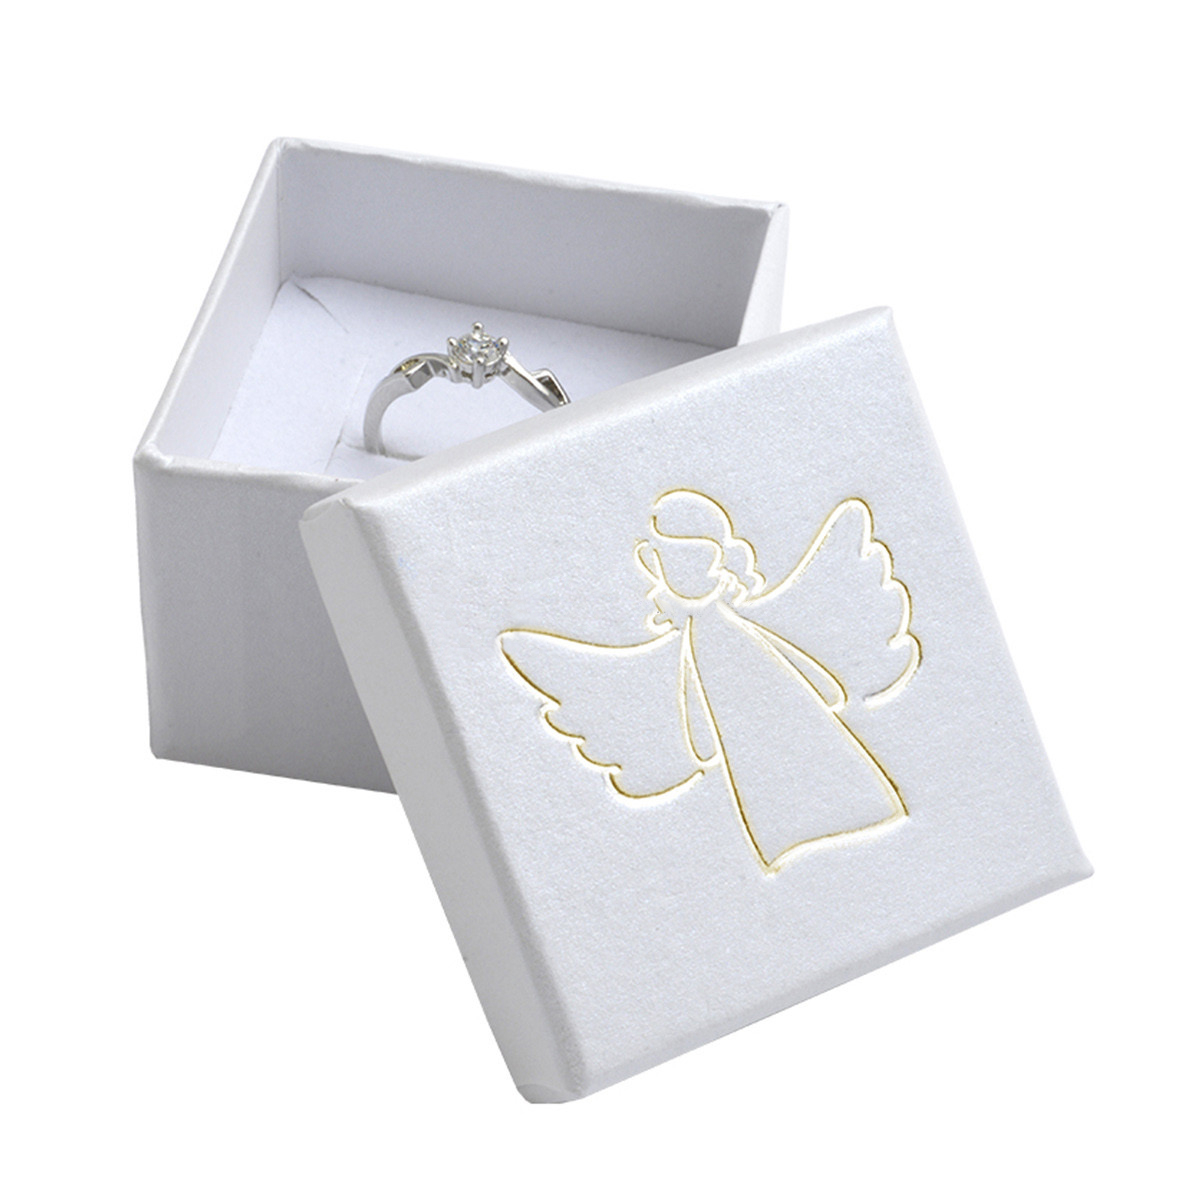 Šperky4U Bílá dárková krabička, zlatý anděl - KR0282-GD